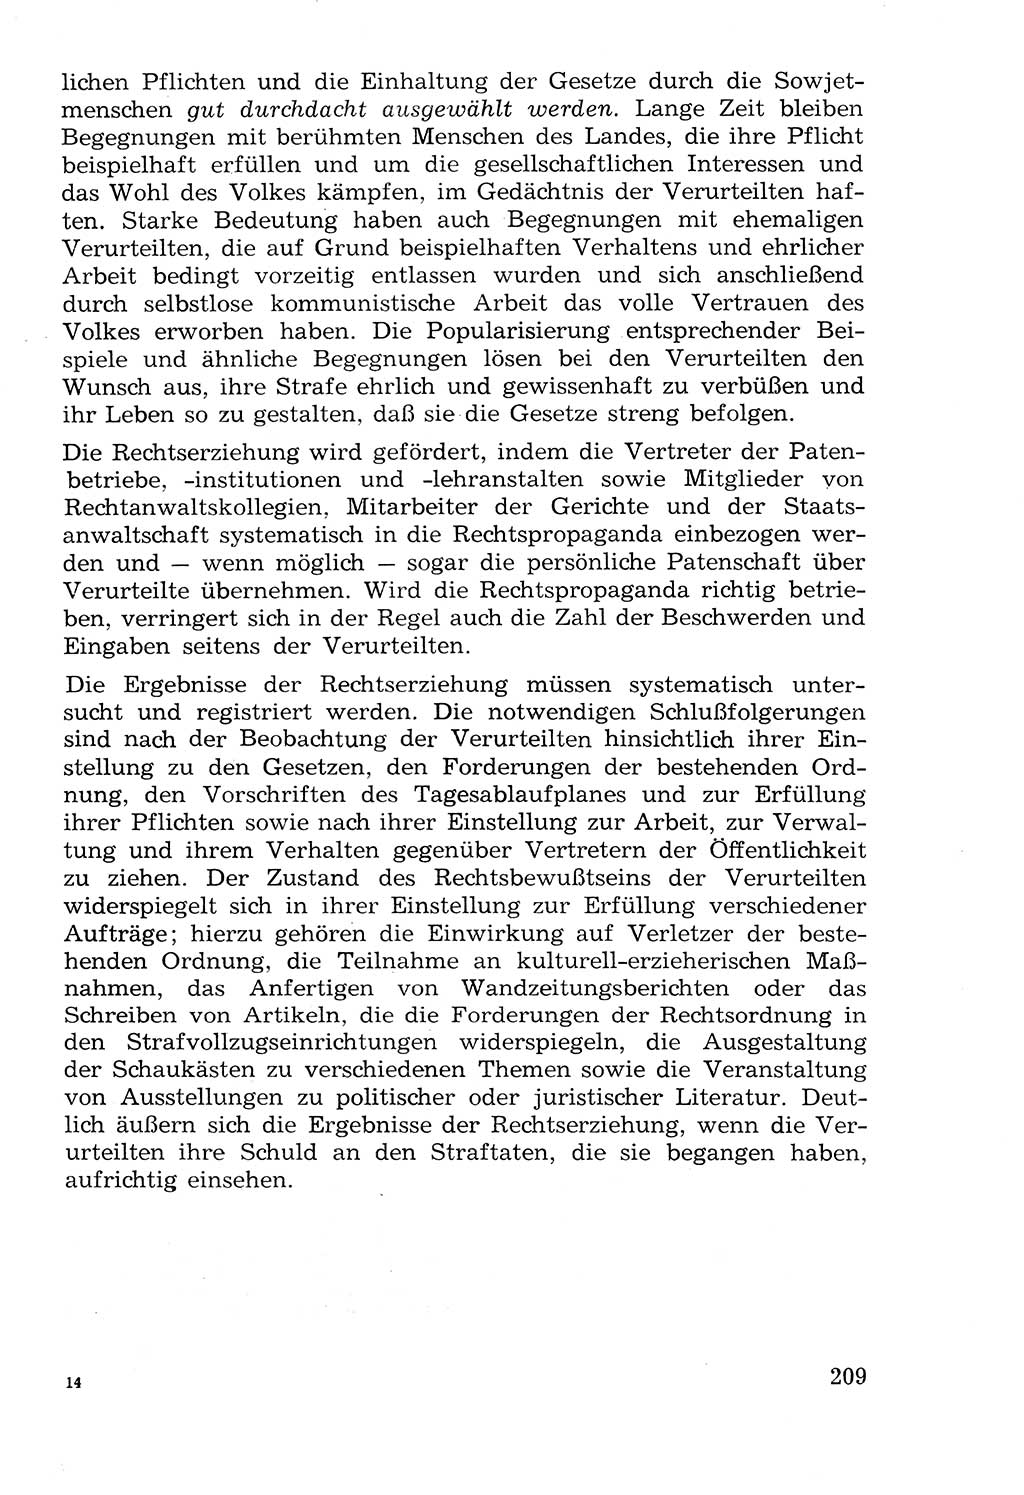 Lehrbuch der Strafvollzugspädagogik [Deutsche Demokratische Republik (DDR)] 1969, Seite 209 (Lb. SV-Pd. DDR 1969, S. 209)